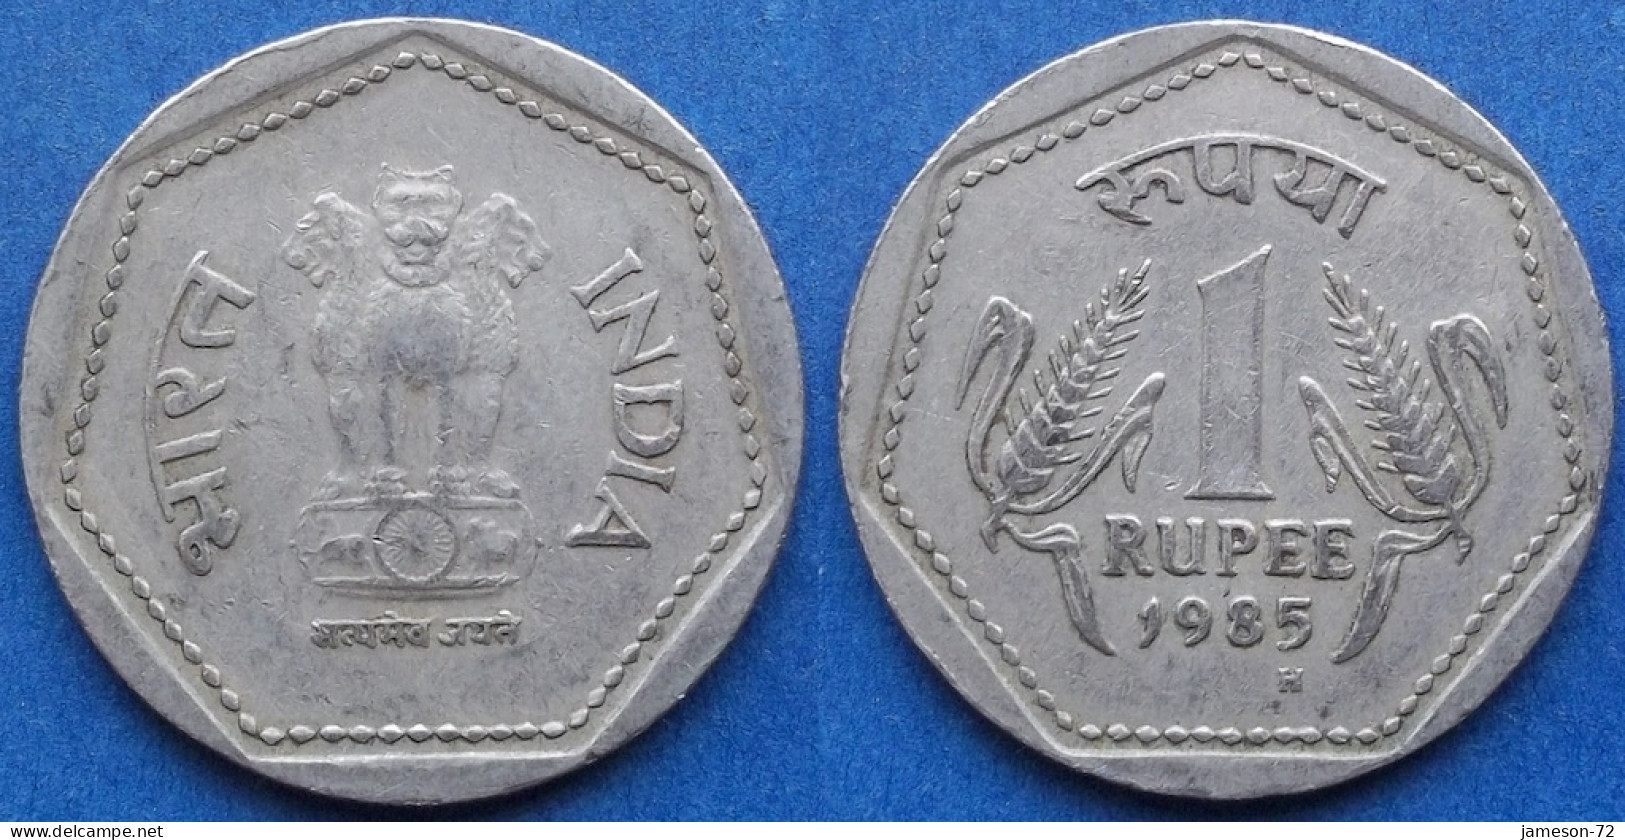 INDIA - 1 Rupee 1985 H "Grain Ears Flank" KM# 79.1 Republic Decimal Coinage (1957) - Edelweiss Coins - Georgia